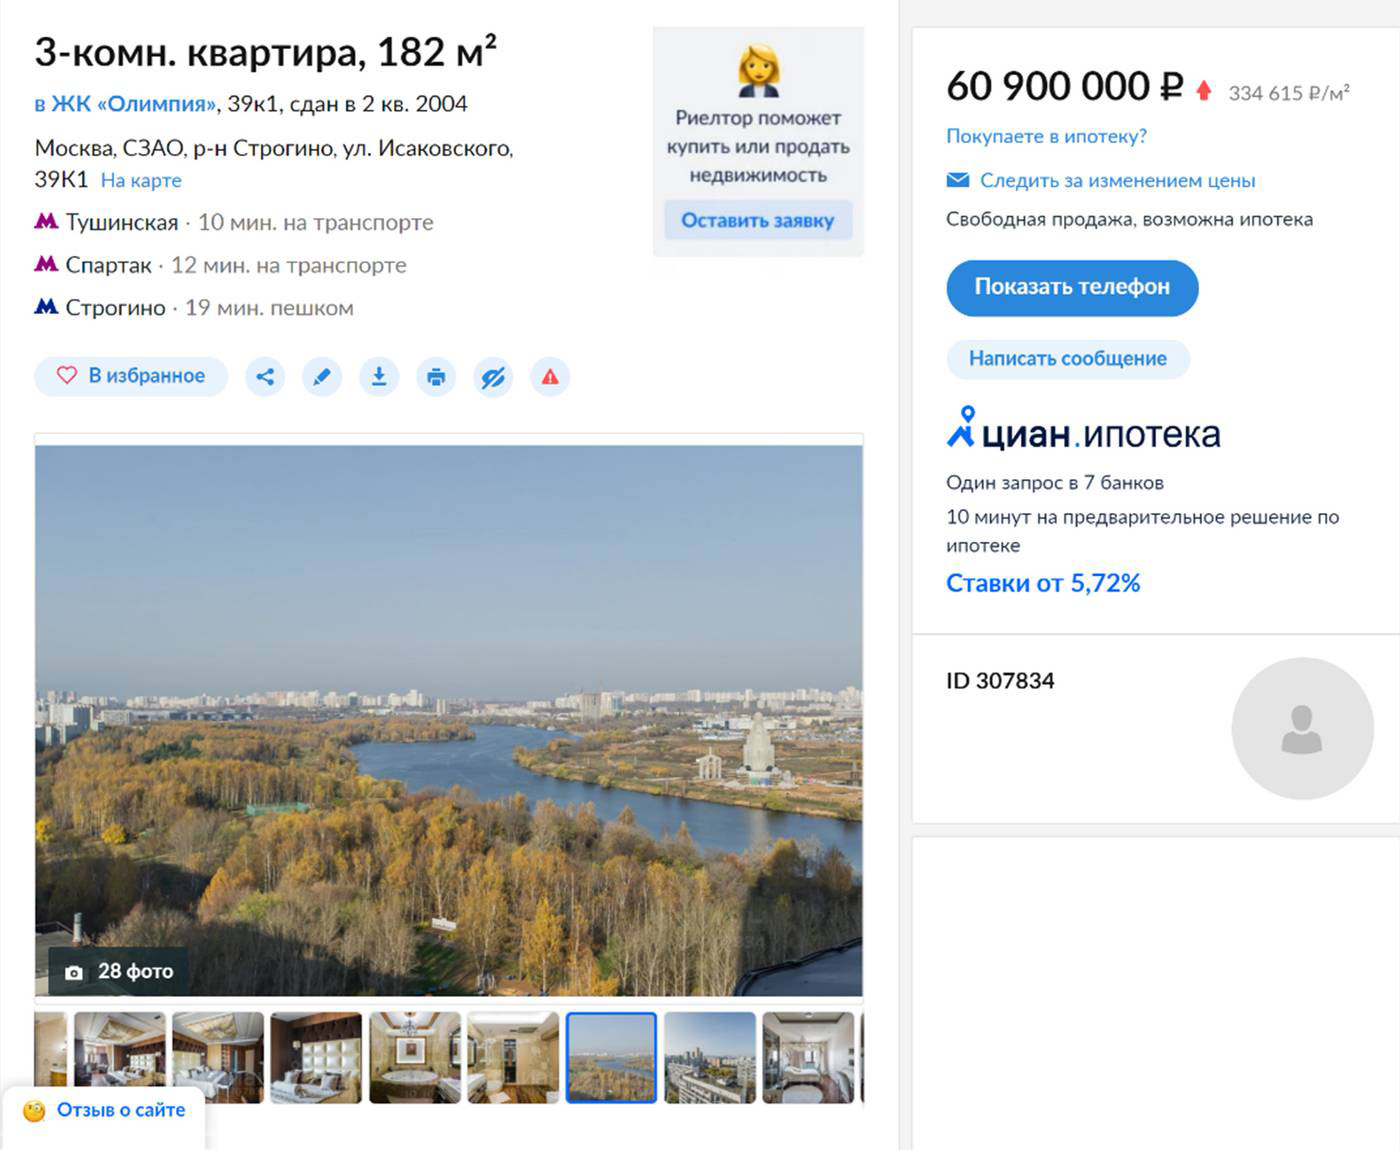 Самая дорогая квартира в Строгине стоила 60,9 млн рублей — это видовая четырехкомнатная квартира 182 м² в ЖК «Олимпия». Сейчас объявление уже снято с продажи. Источник: cian.ru